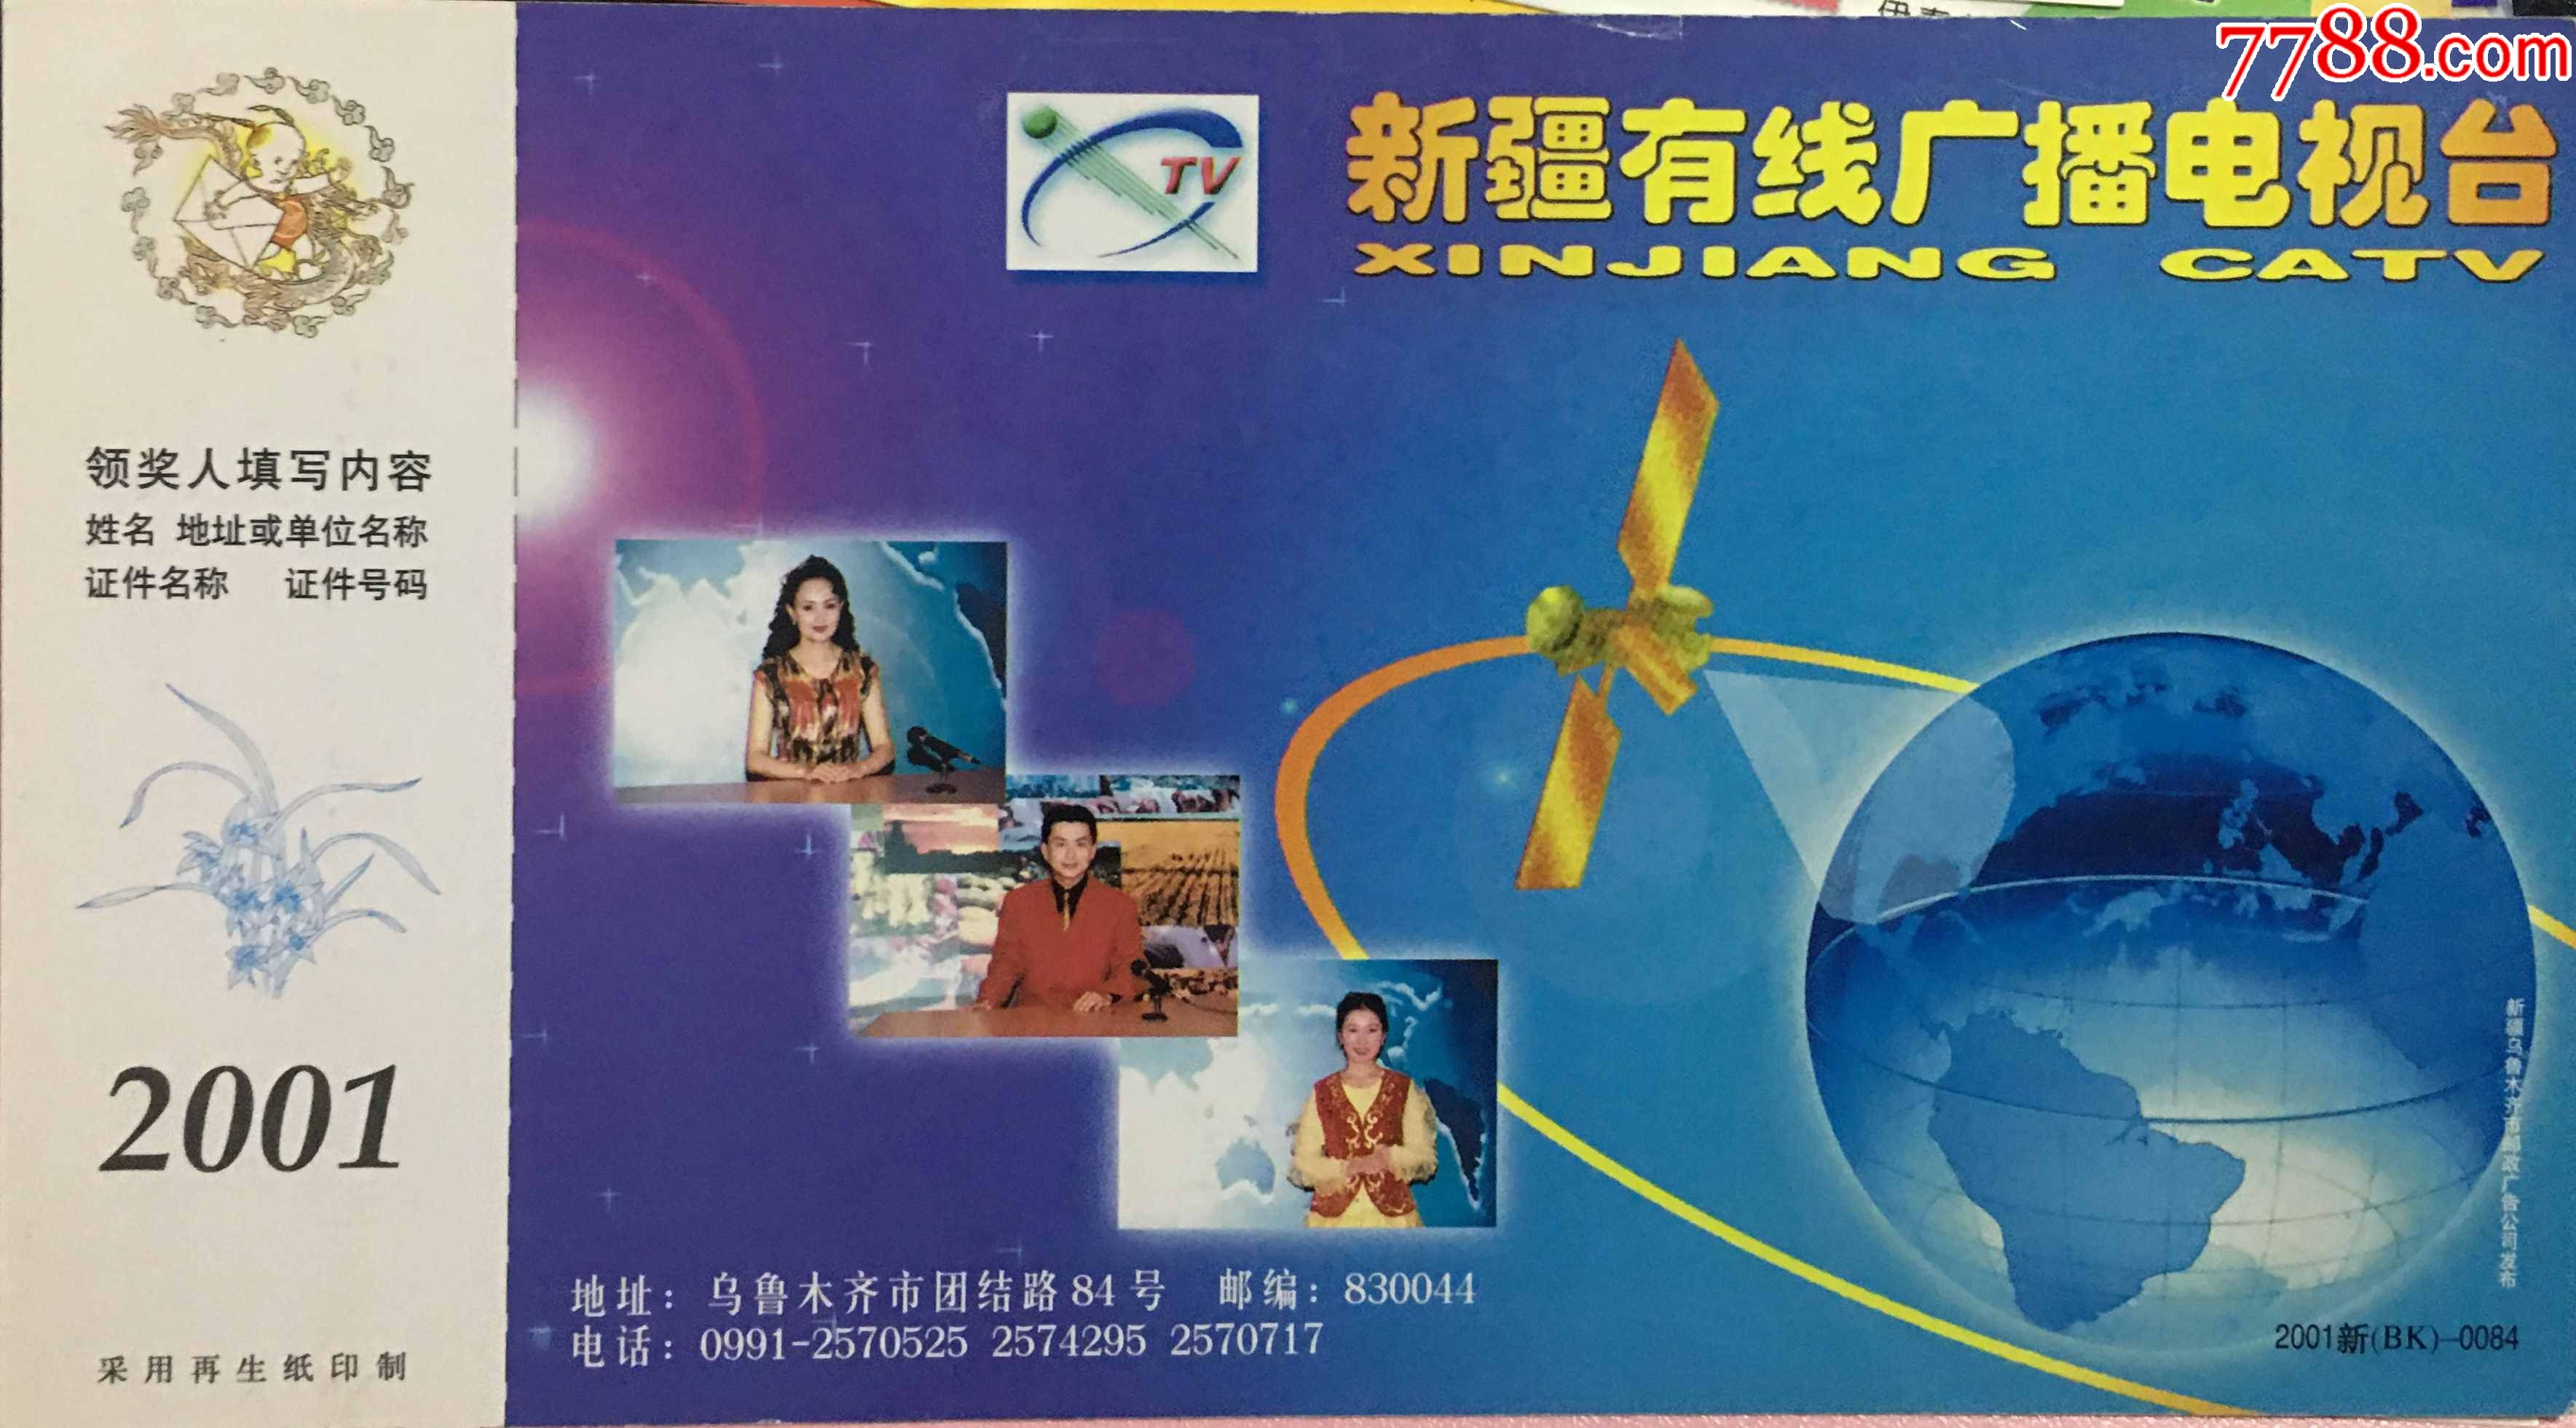 2001年新疆乌鲁木齐邮政集电视台地球和通信卫星图企业金卡